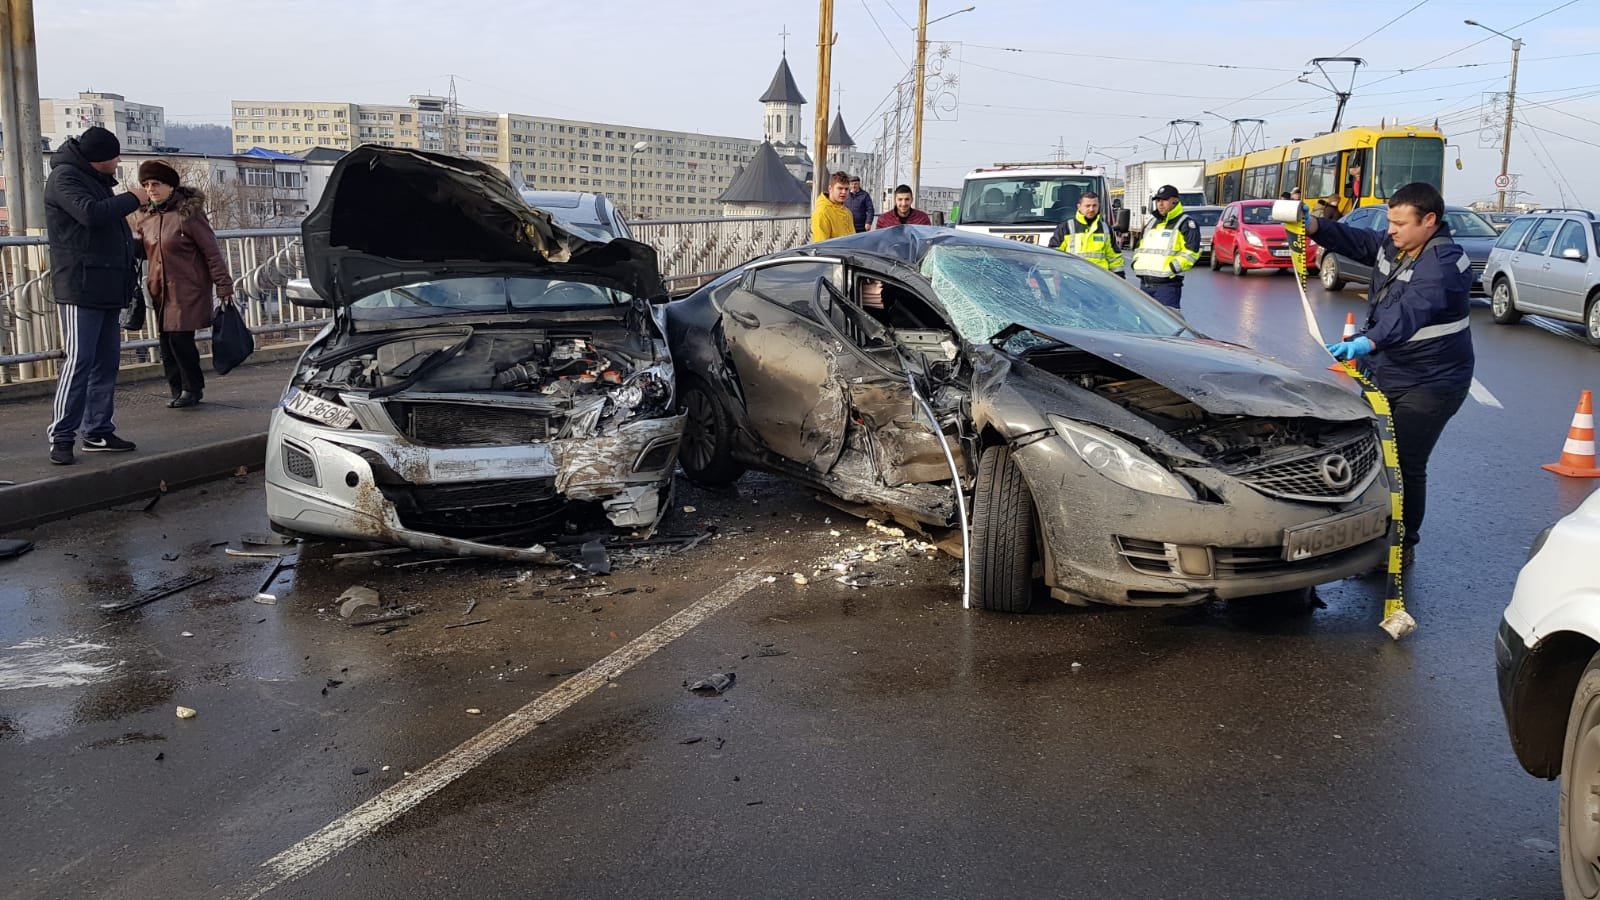  FOTO&VIDEO: Două mașini distruse după un accident pe podul Alexandru